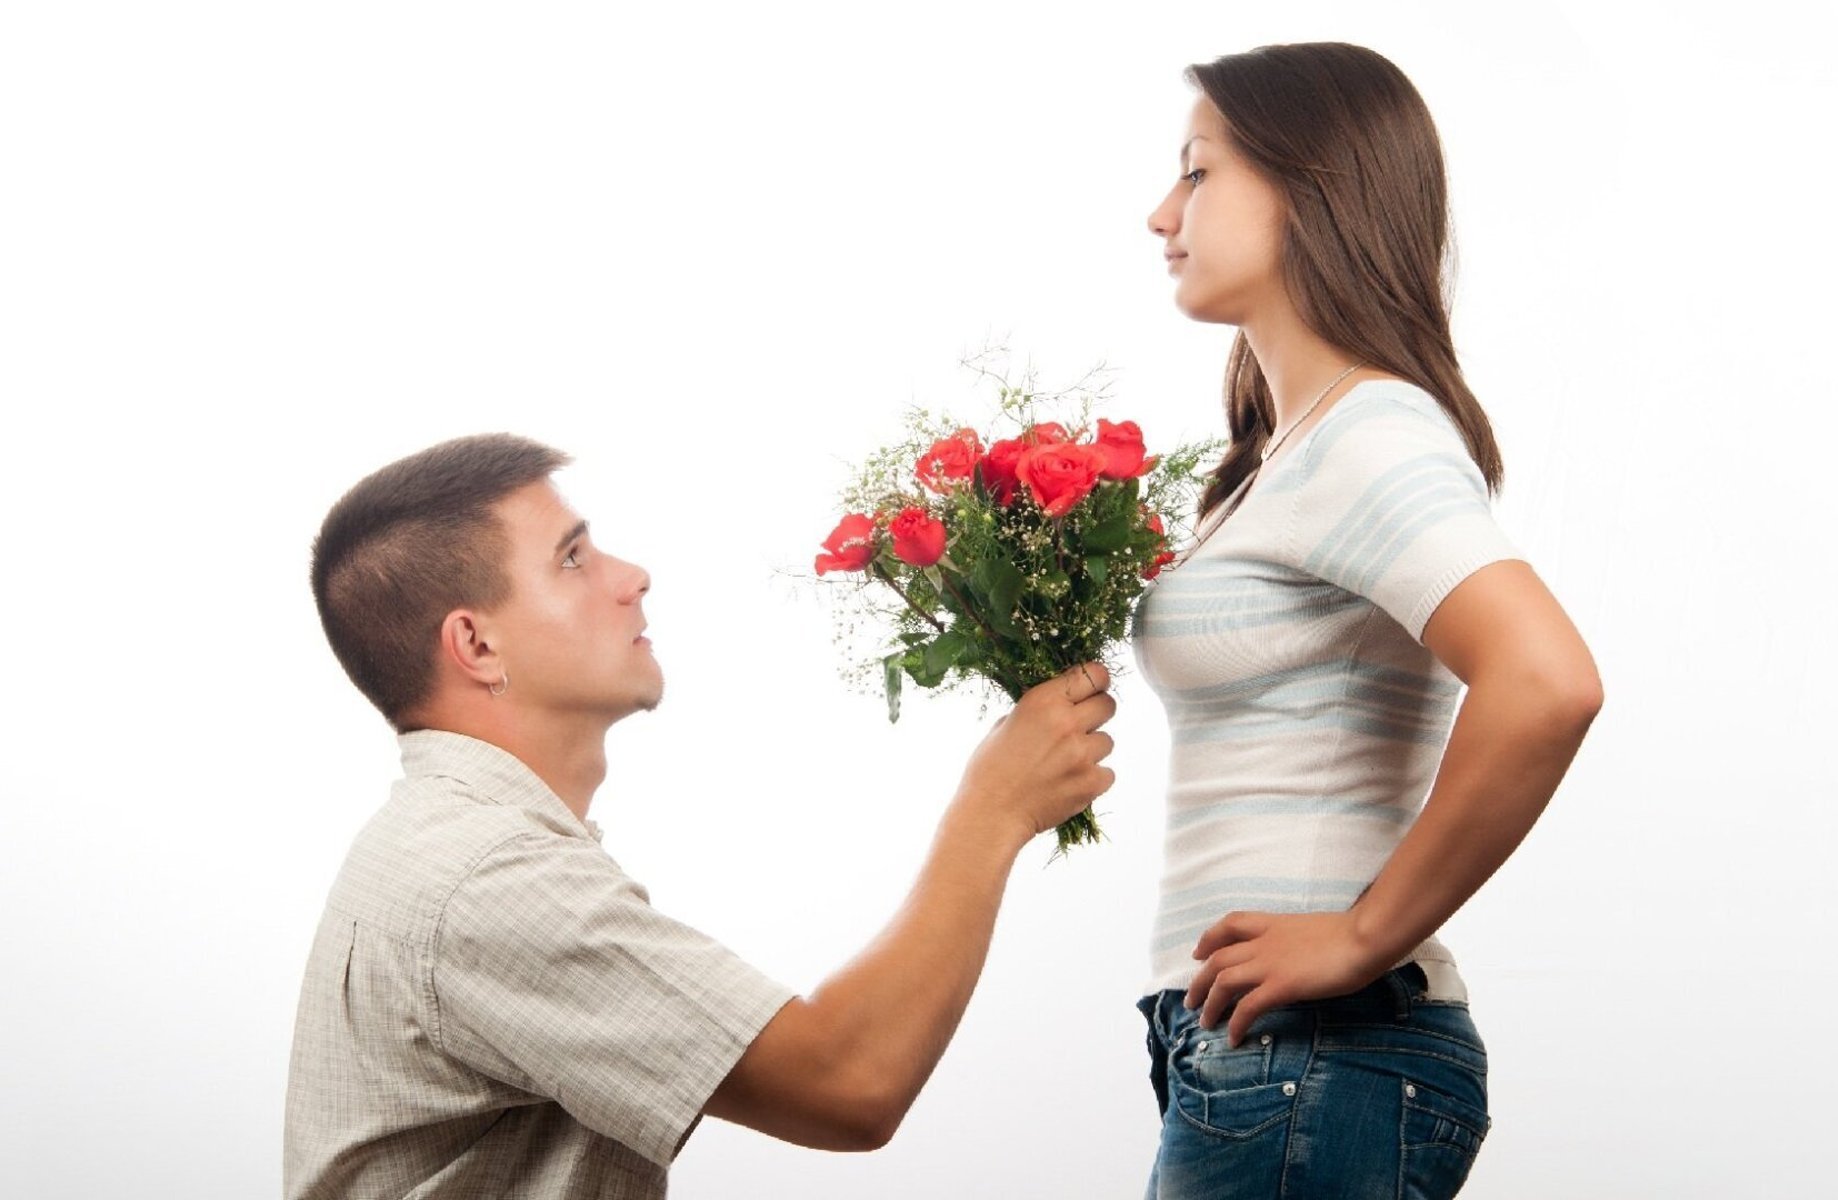 Любовник подарил подарок. Парень даритдеаушке цветы. Парень дарит девушке цветы. Девушке дарят цветы. Мужчина дарит цветы женщине.